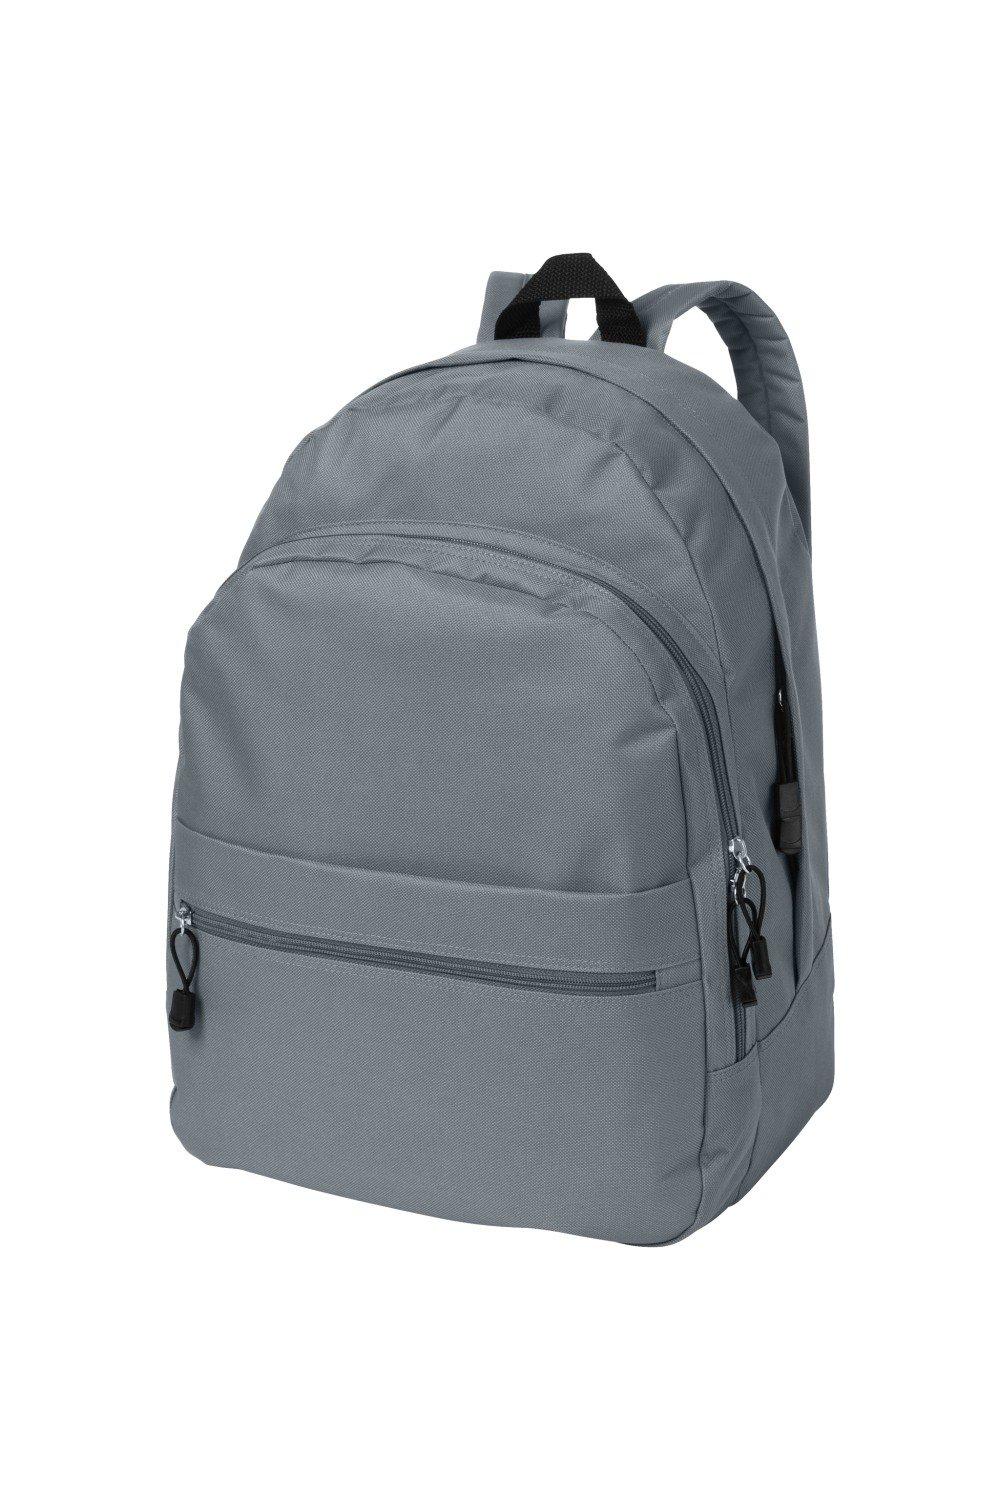 Трендовый рюкзак Bullet, серый рюкзак с карманом единорог